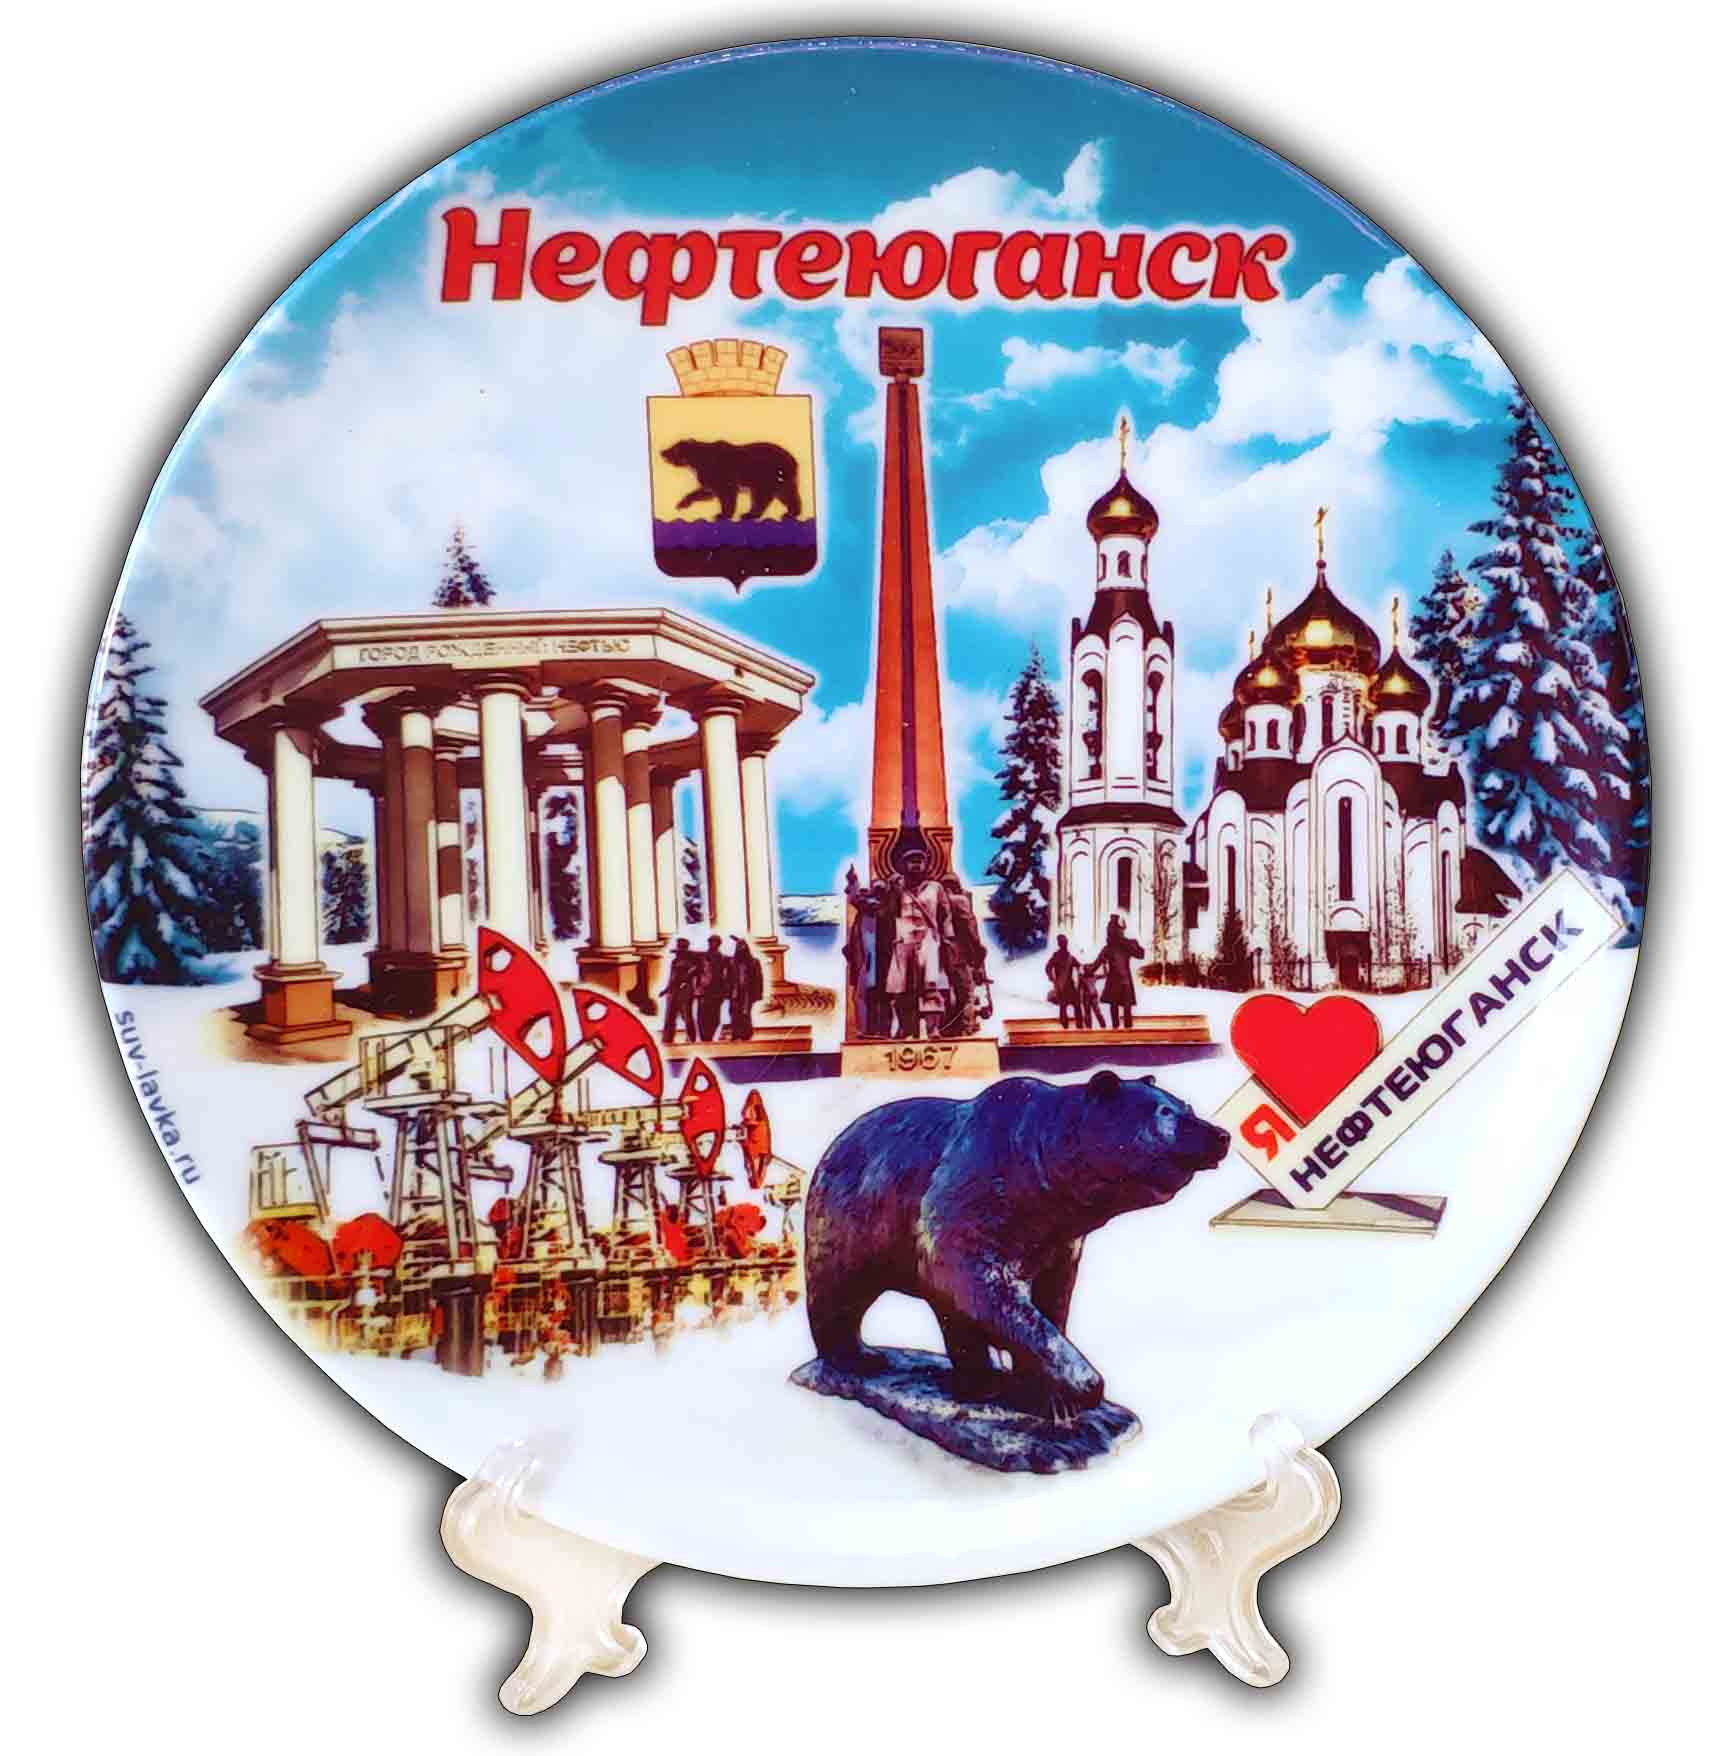 Сувенирная тарелка "Нефтеюганск"